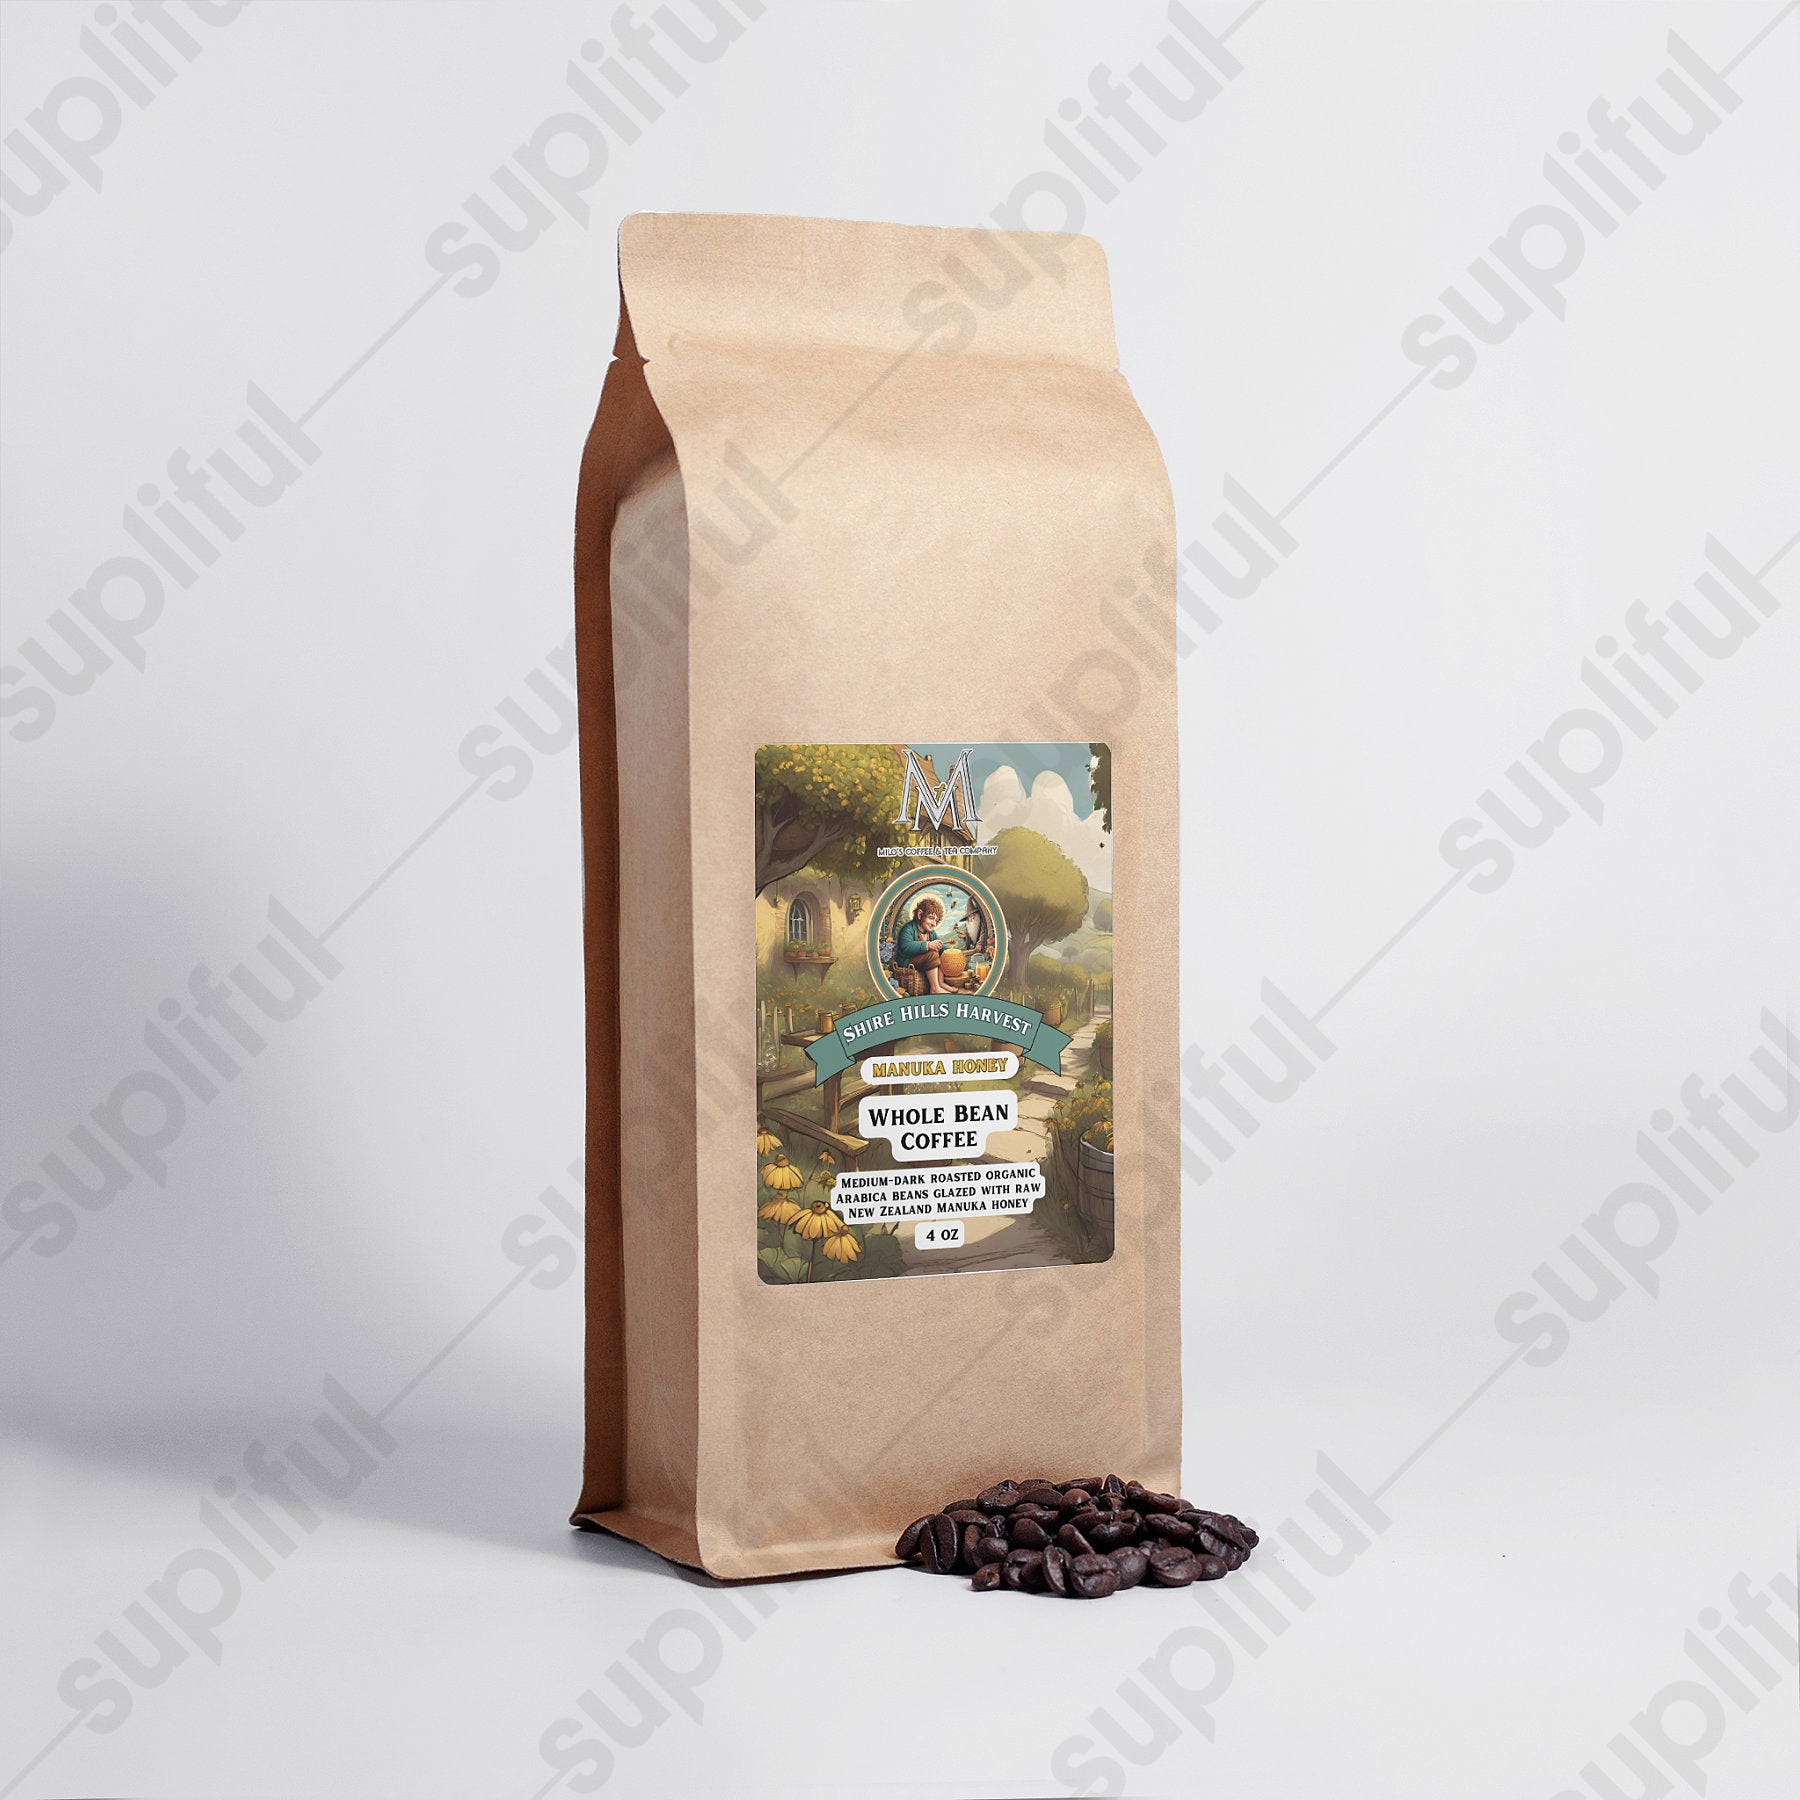 Shire Hills Harvest Manuka Honey Coffee 16oz - Milo's Coffee and Tea Company